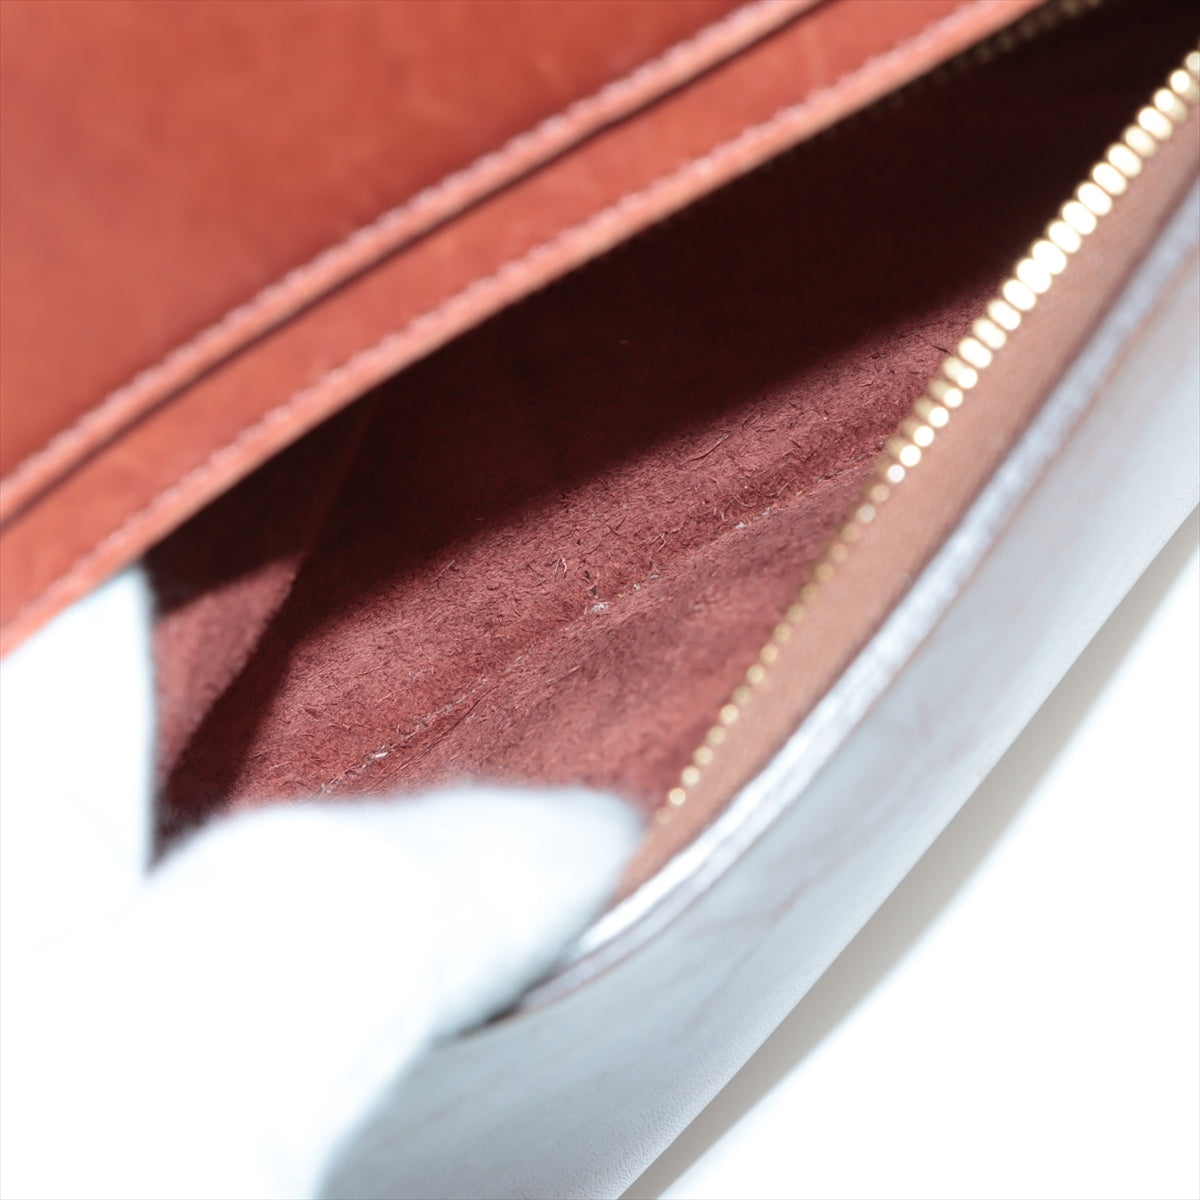 Celine Belt Bag Mini Leather 2WAY Handbag Brown Belt